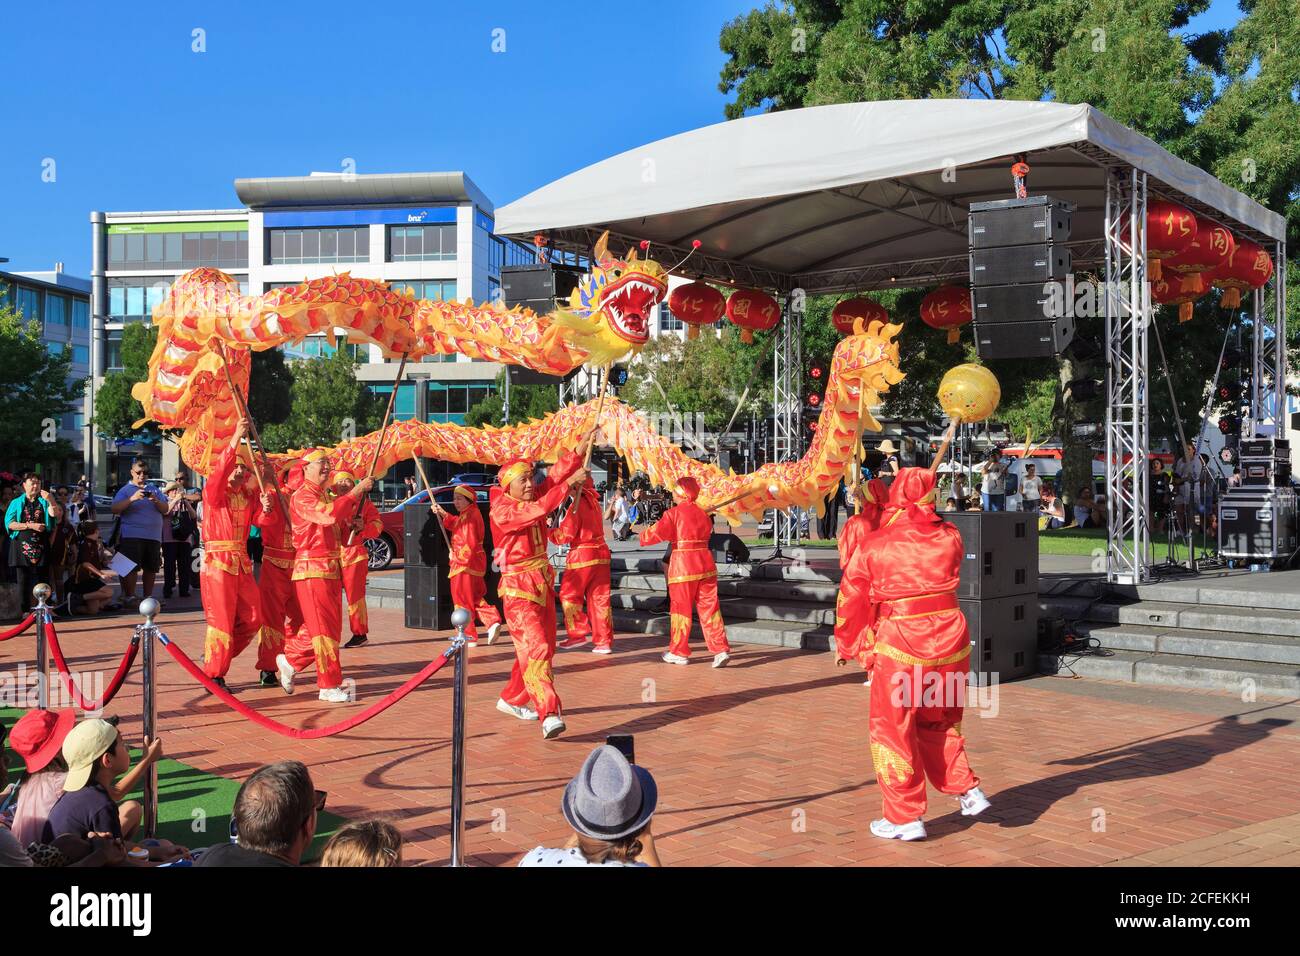 Festeggiamenti per il Capodanno cinese. I ballerini del drago si esibiscono con un drago rosso brillante e dorato davanti a una folla. Hamilton, Nuova Zelanda, 2/16/2019 Foto Stock